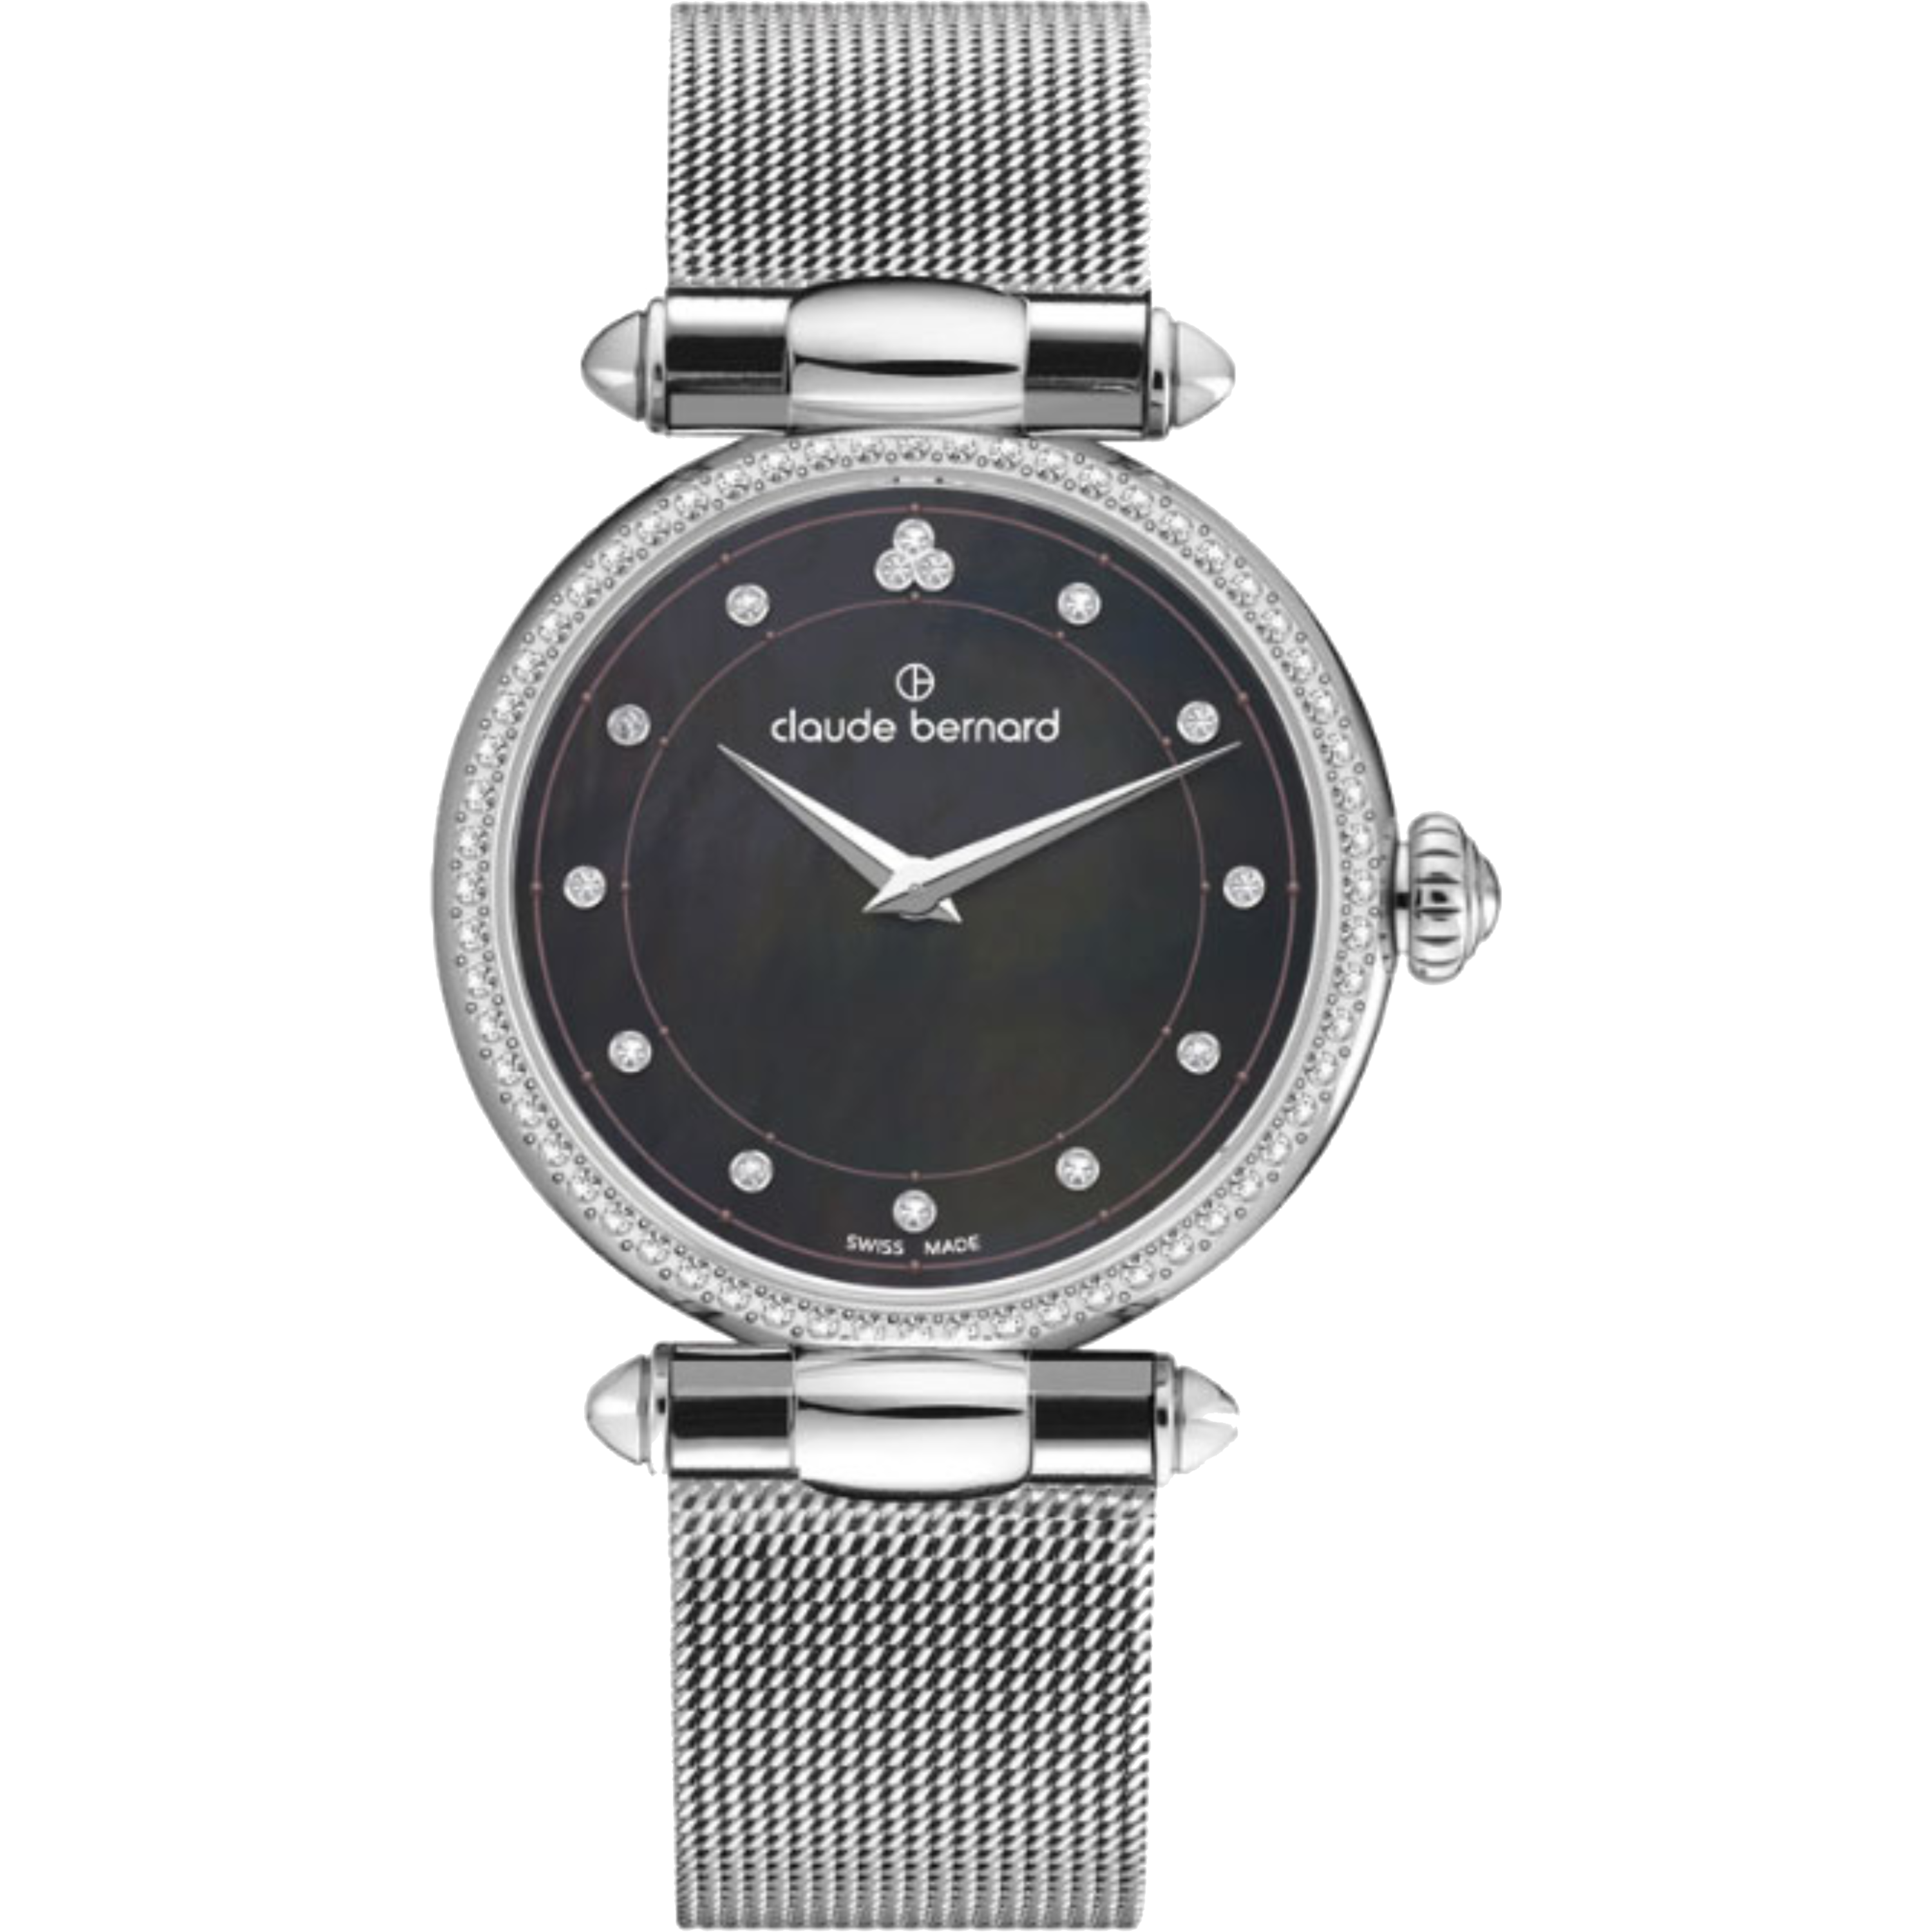 שעון יד לאישה Claude Bernard 20509 3M NANN 34mm צבע כסף/תכלת/ספיר קריסטל - אחריות לשנה ע"י היבואן